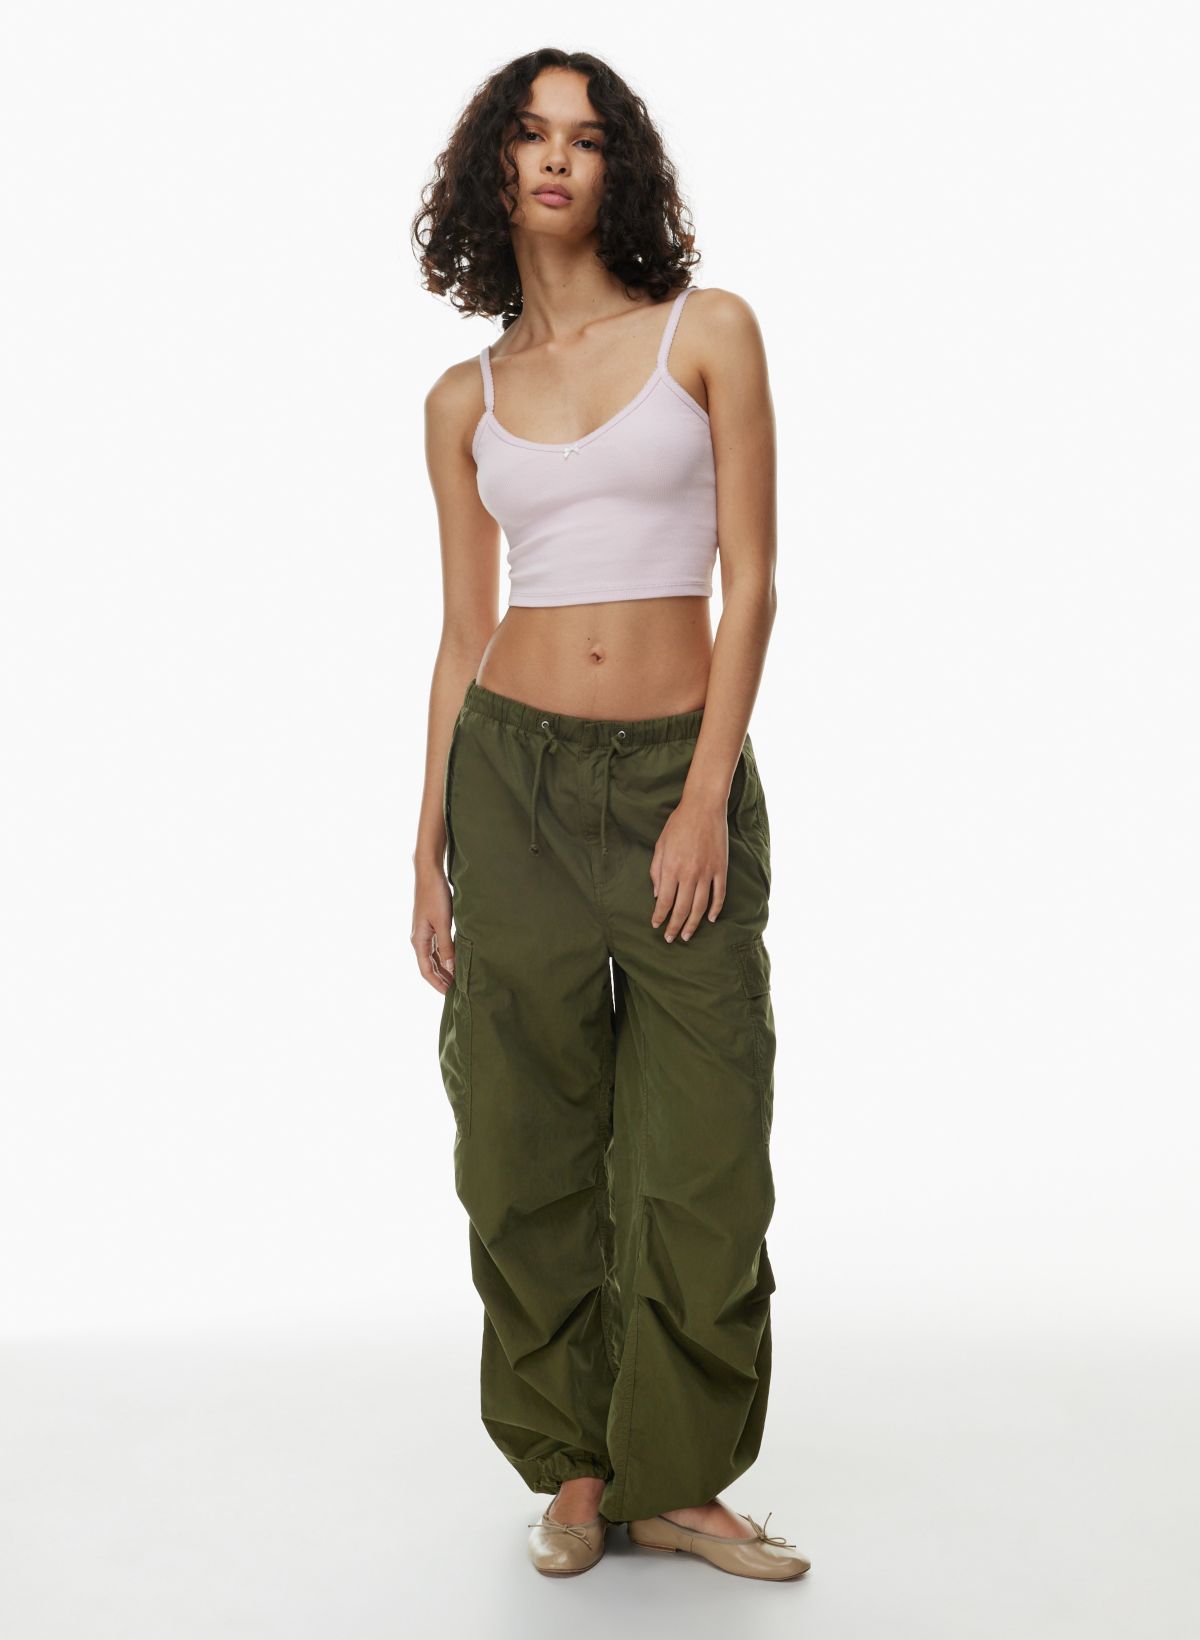 Custom Camisole Tank Crops Tops Vest Women Women's Lace Bra